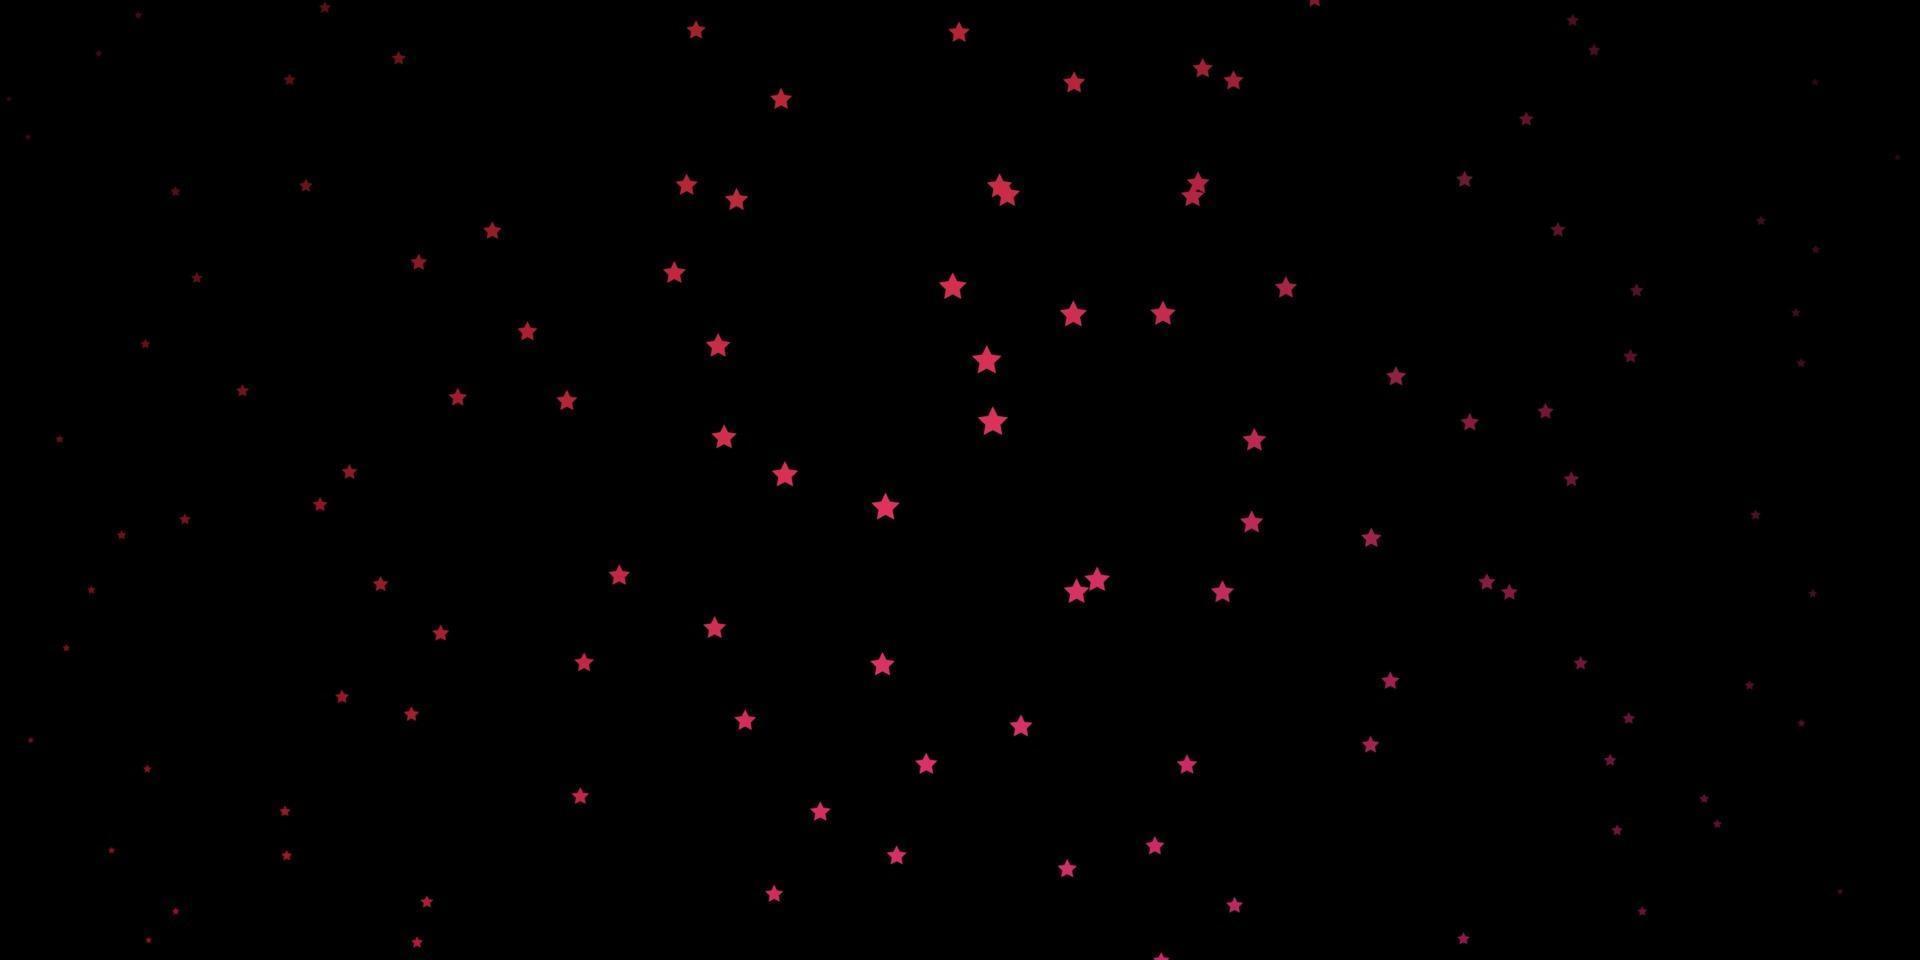 layout de vetor rosa escuro e vermelho com estrelas brilhantes.